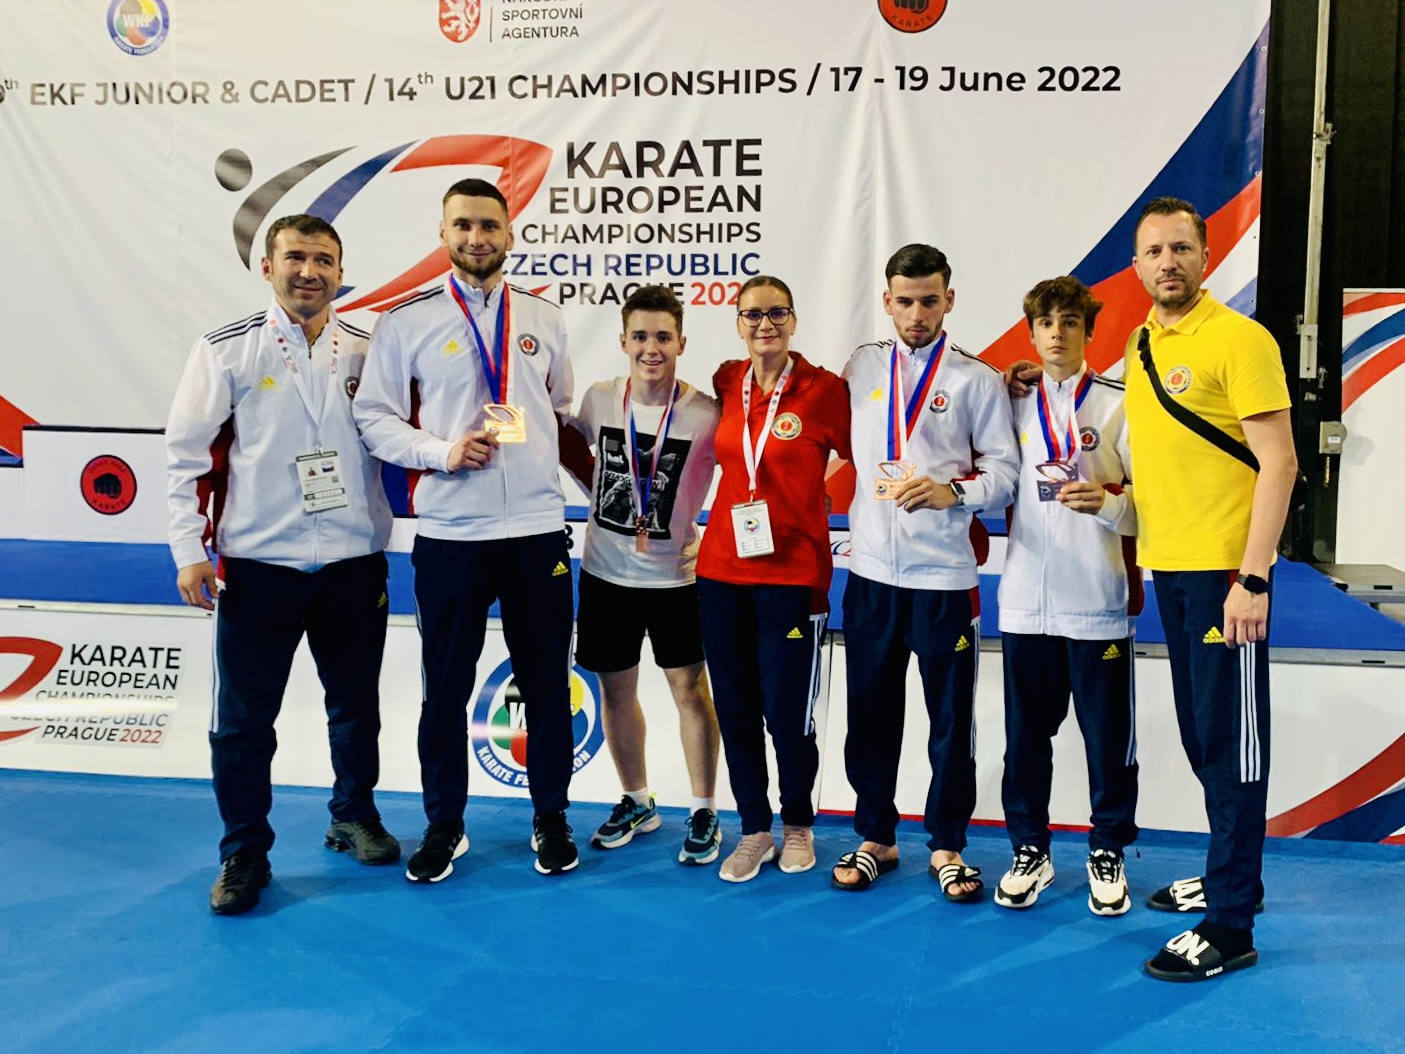 Rezultaet excelente pentru sportivii români la Campionatul European de Karate